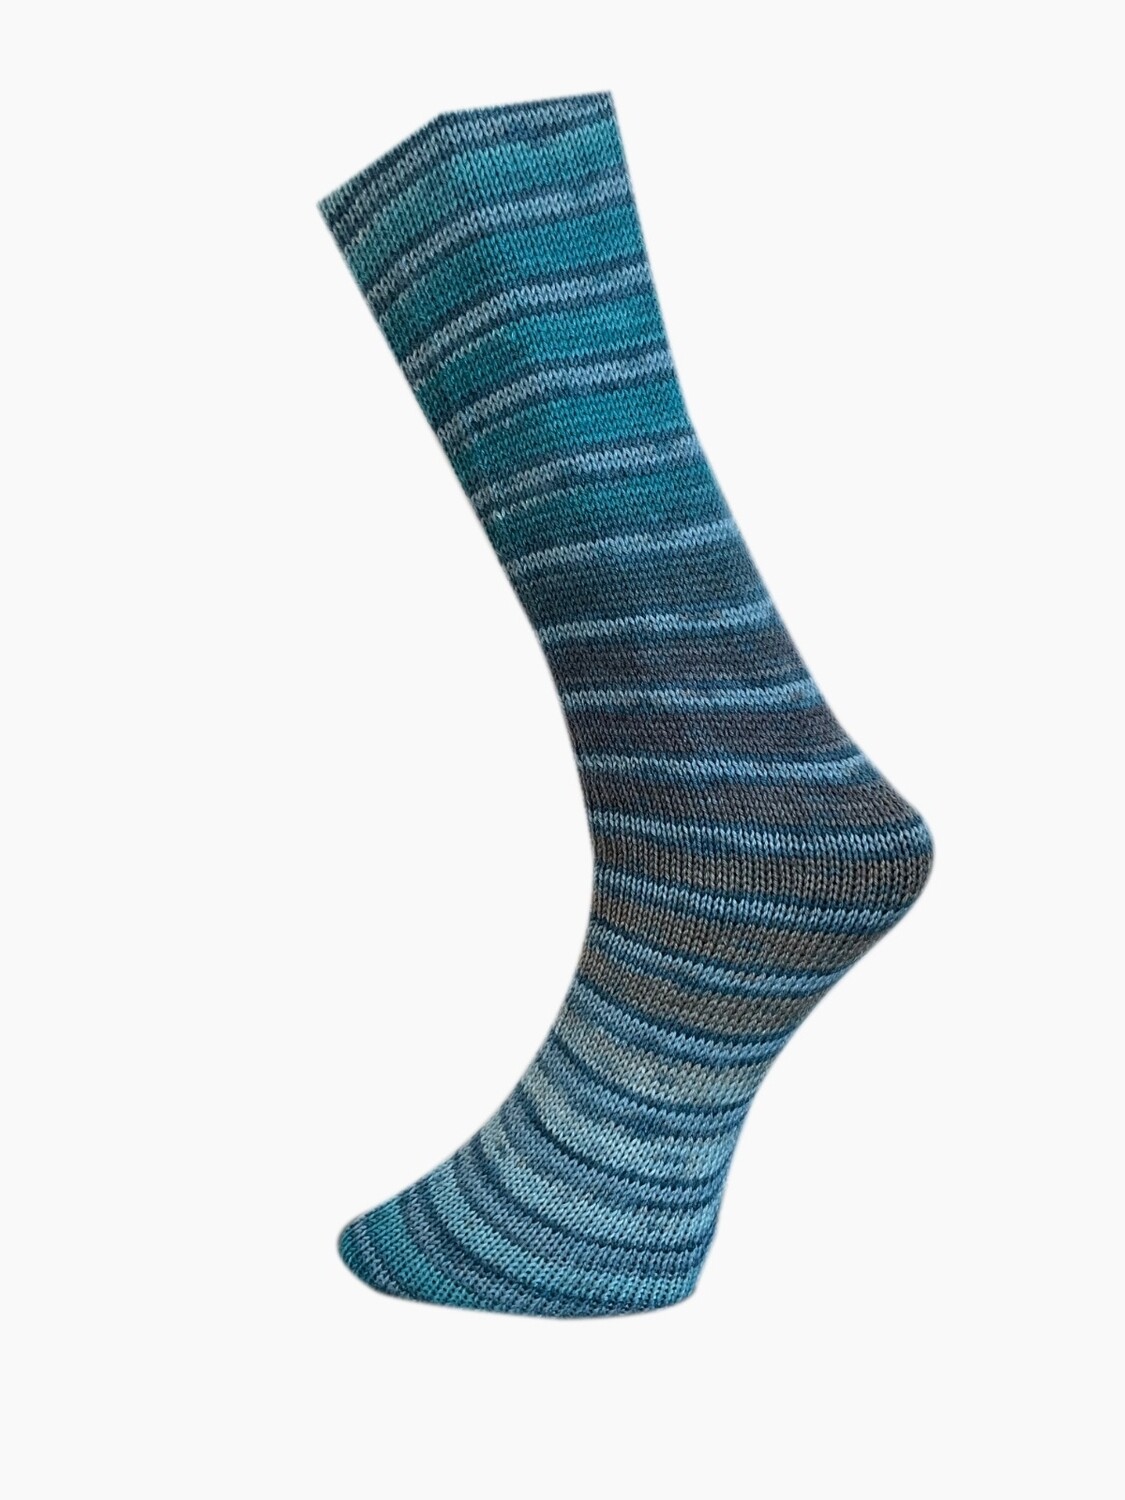 Ferner Lungauer Sockenwolle mit Seide (100g), Farbe: 529